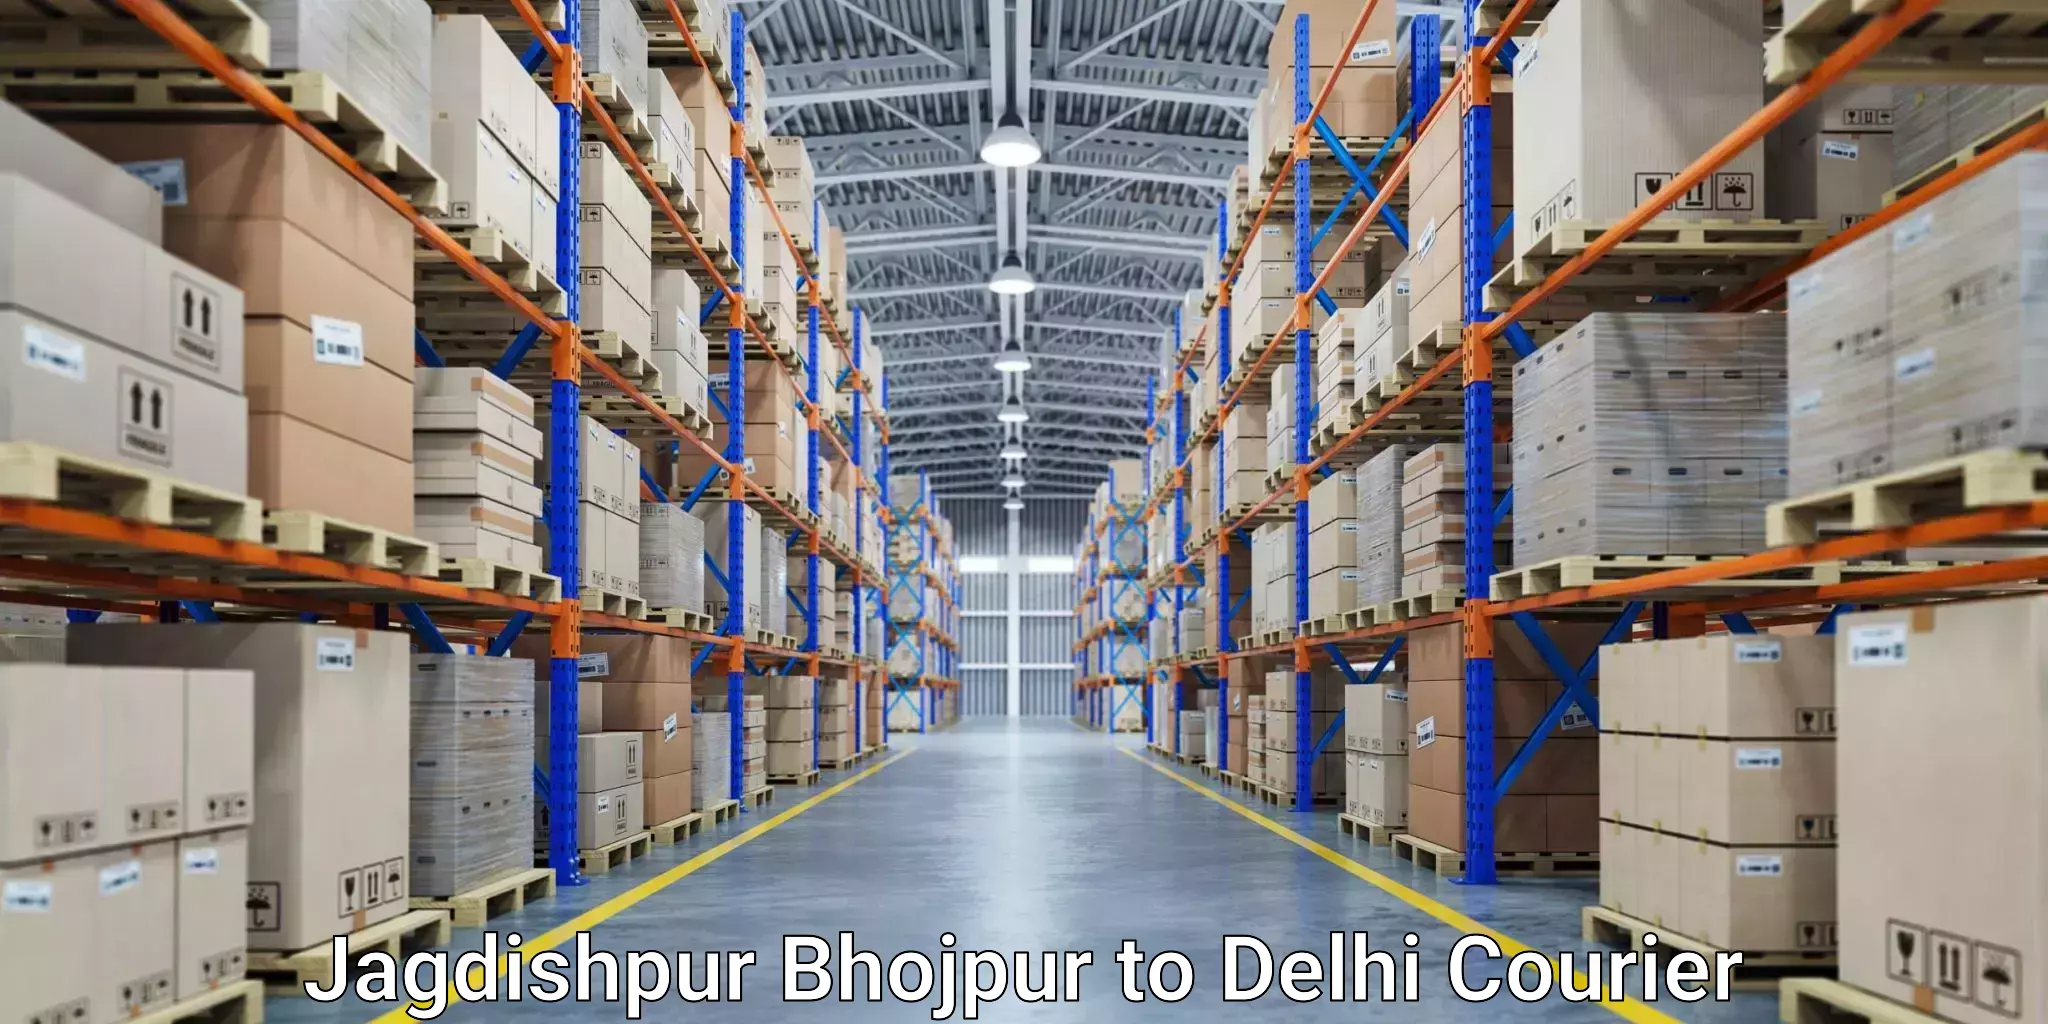 Courier service comparison Jagdishpur Bhojpur to Delhi Technological University DTU